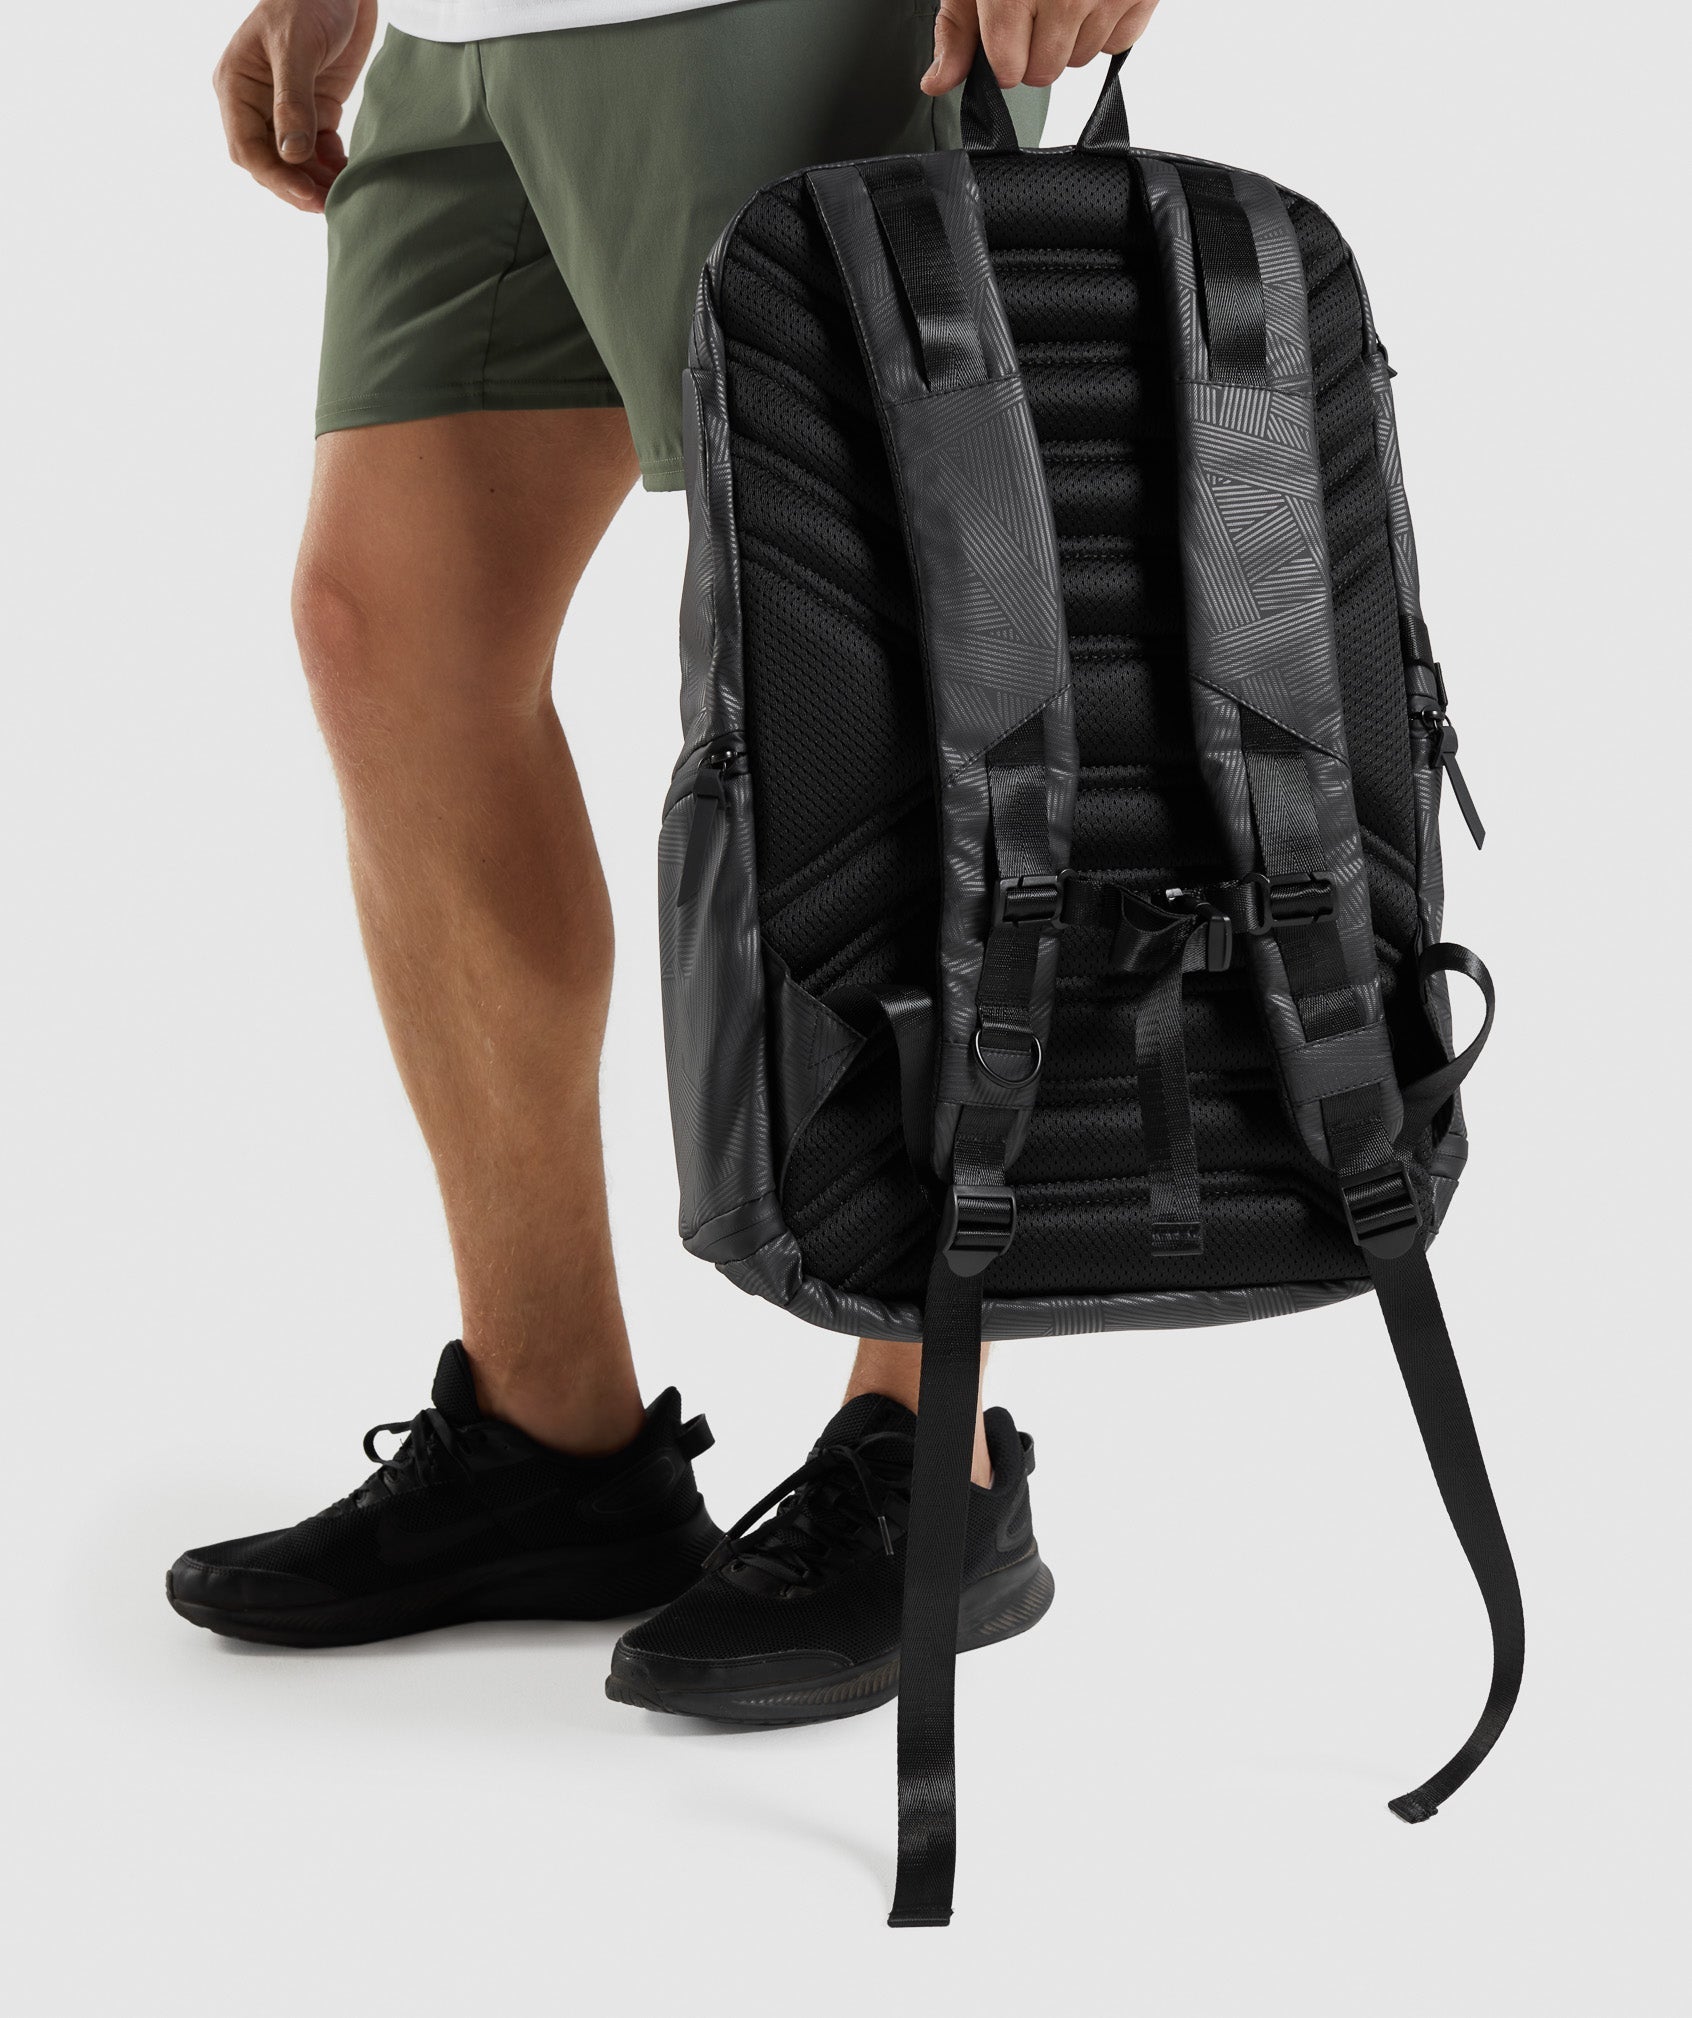 X-Series 0.3 Backpack in Black Print - view 4